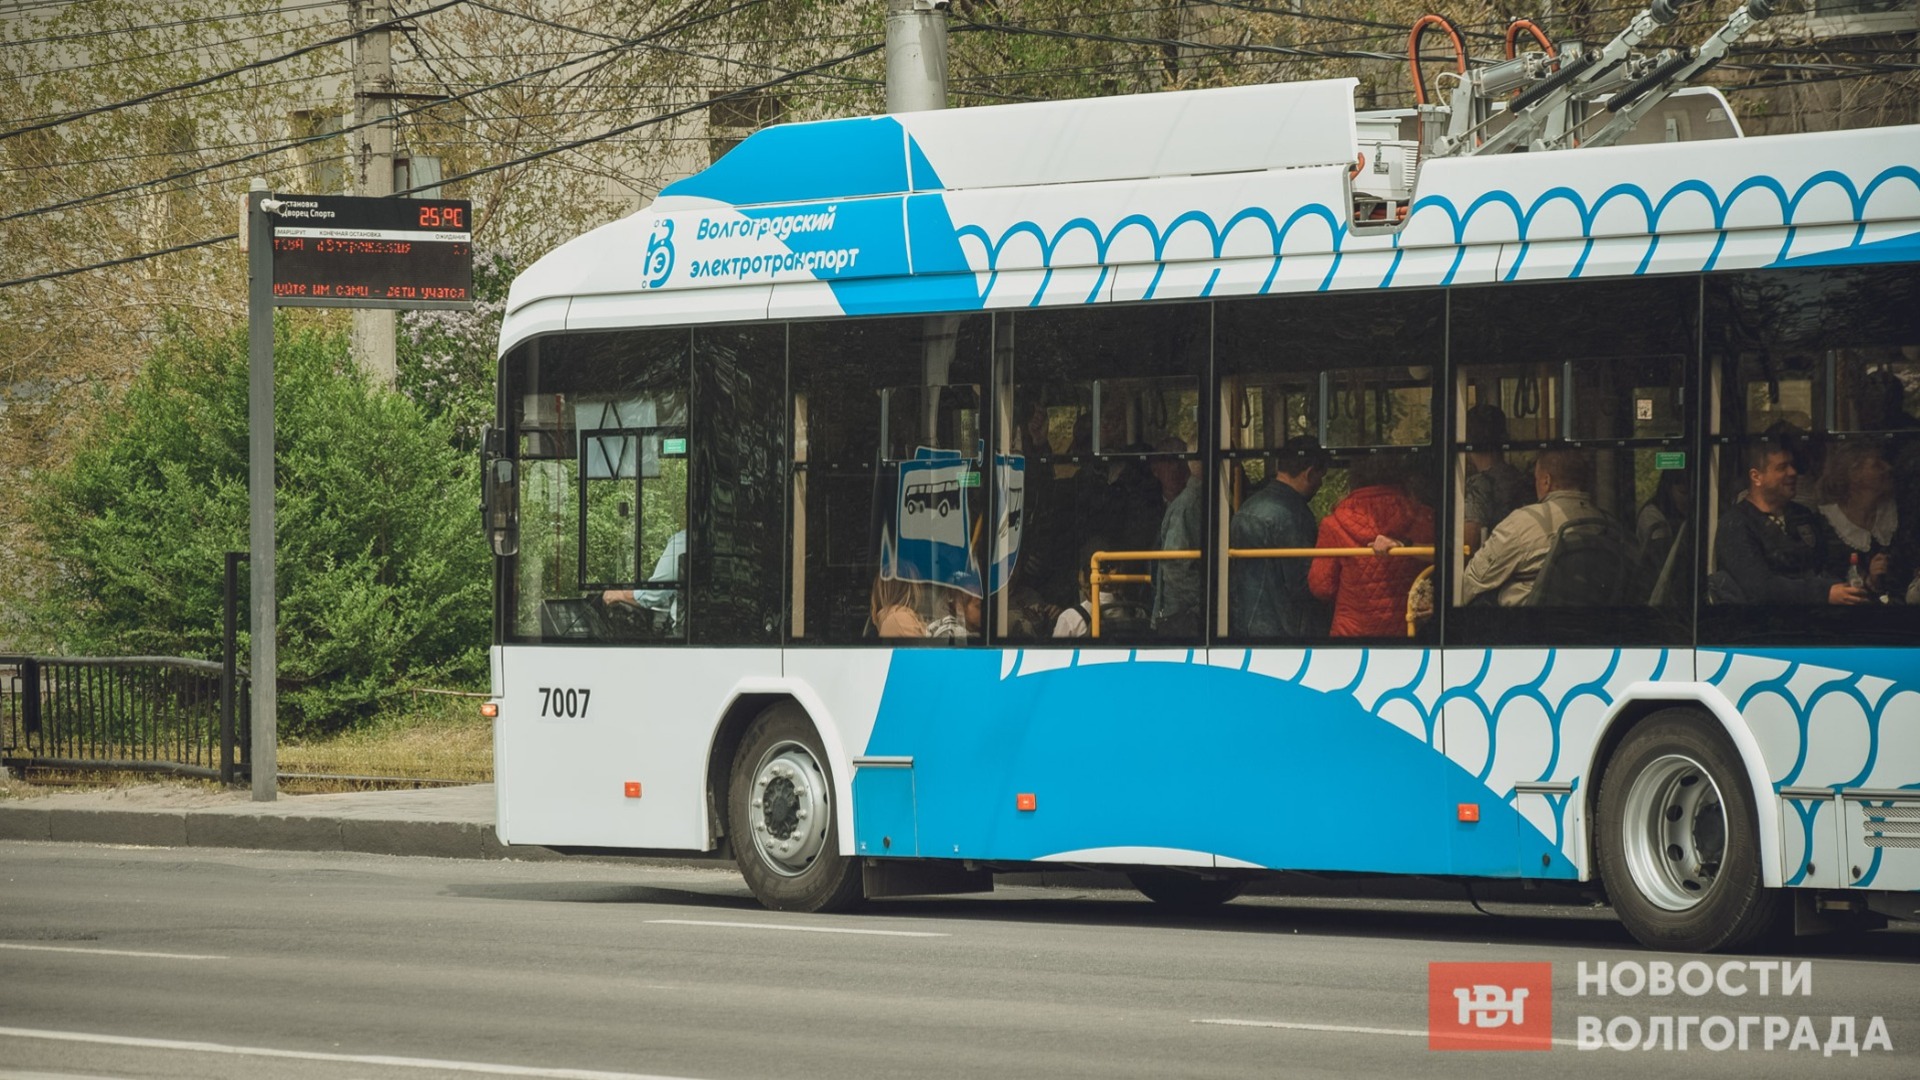 Заменить междугородние маршрутки троллейбусами предлагают в Волгограде